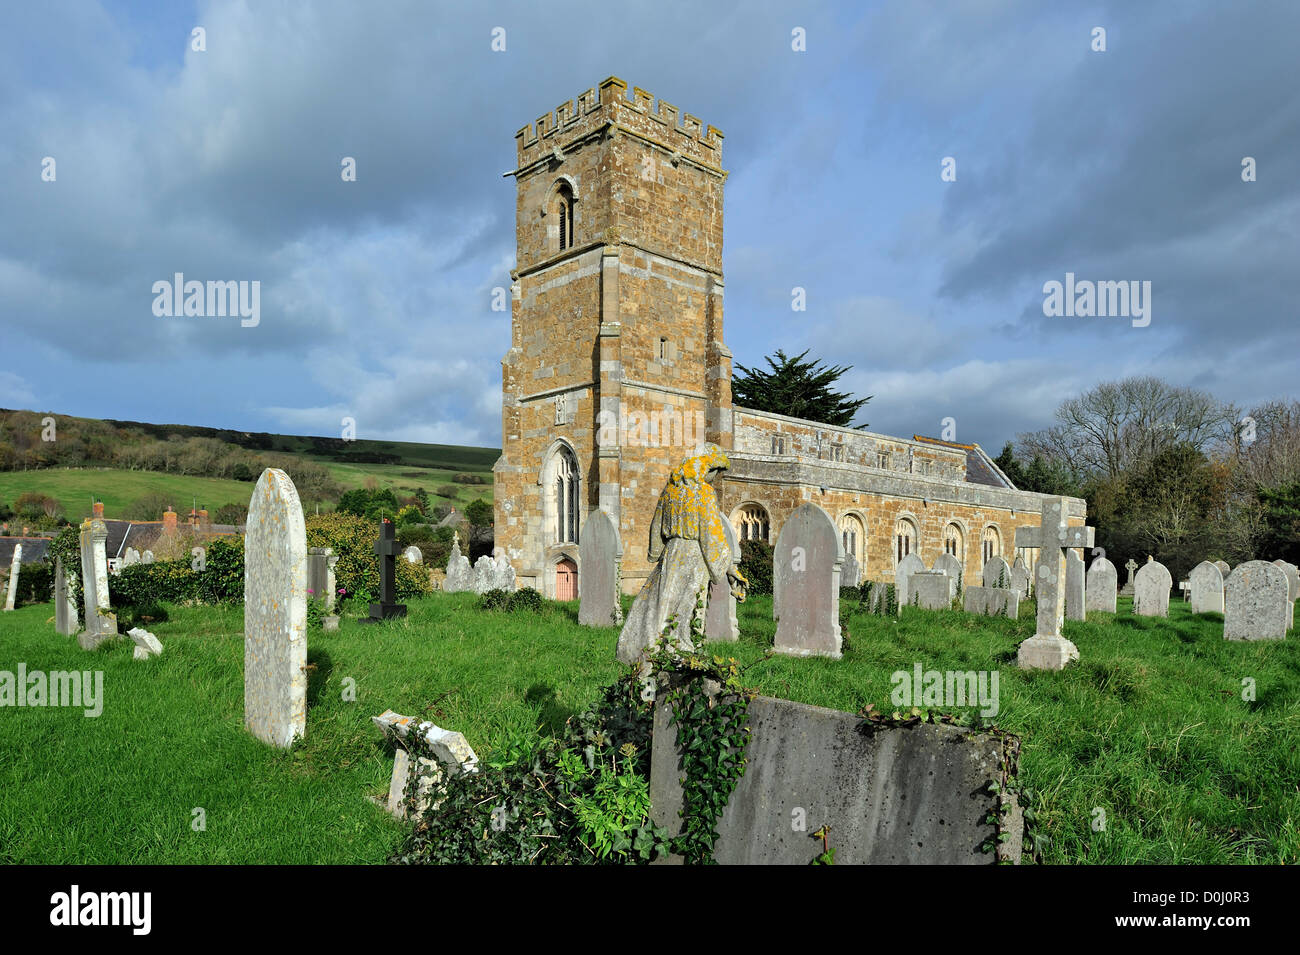 Tombes anciennes au cimetière de l'église paroissiale de St Nicholas à Abbotsbury le long de la Côte Jurassique, Dorset, dans le sud de l'Angleterre, Royaume-Uni Banque D'Images